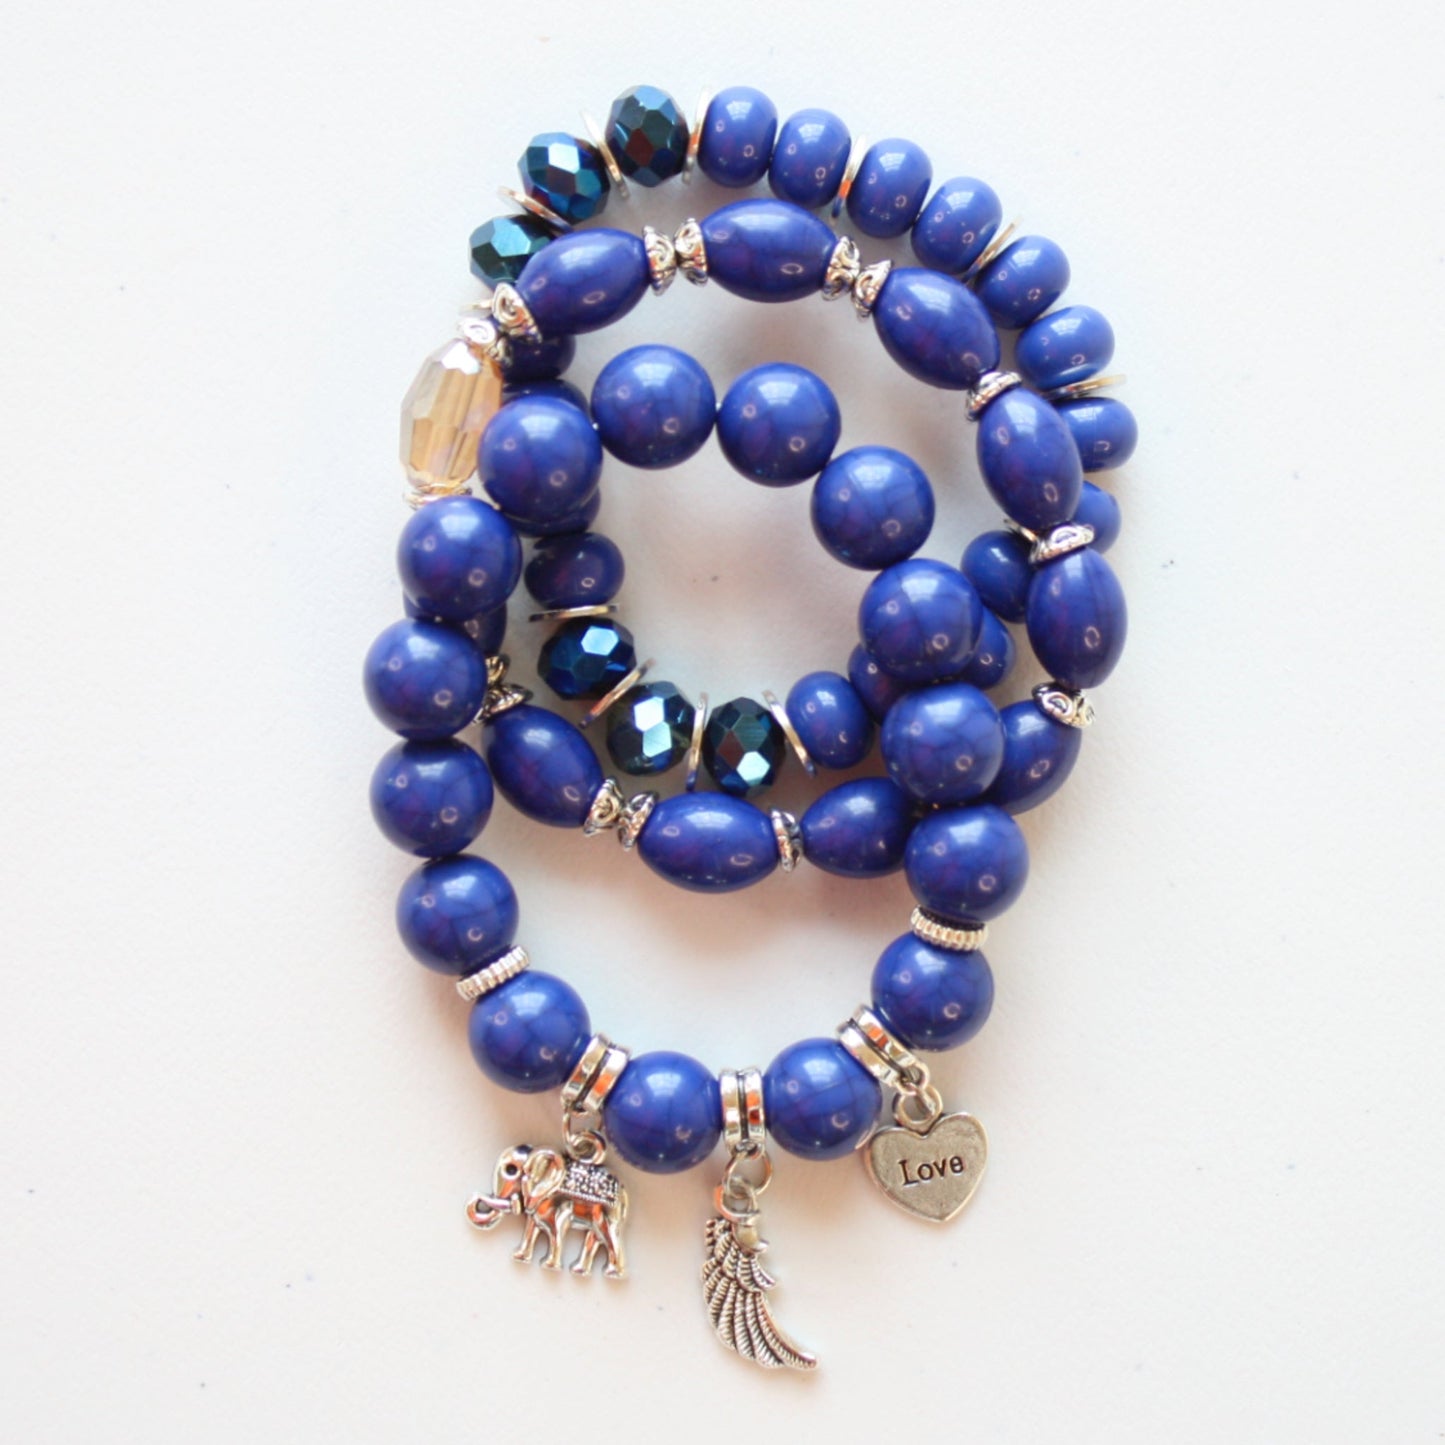 Boho Beaded Stretch Bracelet 3 Piece Set - Blue - Made in the USA